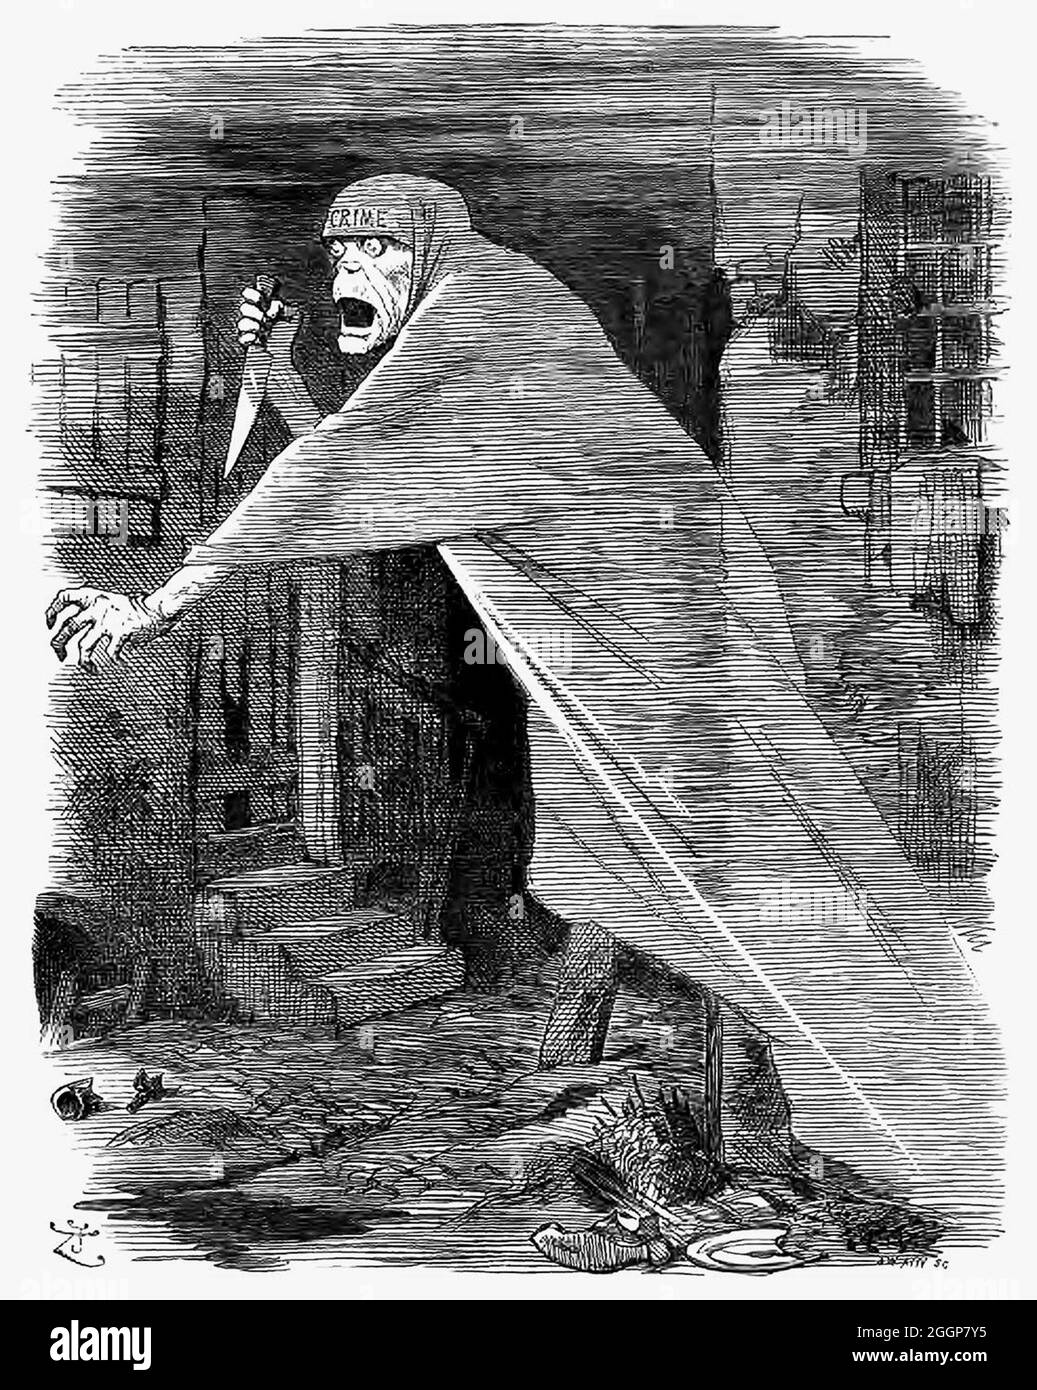 Une caricature satirique du magazine Punch montrant le fantôme de Jack l'Éventreur qui se balade dans le quartier de Whitechapel à Londres, symbolisant le « crime hurissant - la Nemesis de la négligence », i. Banque D'Images